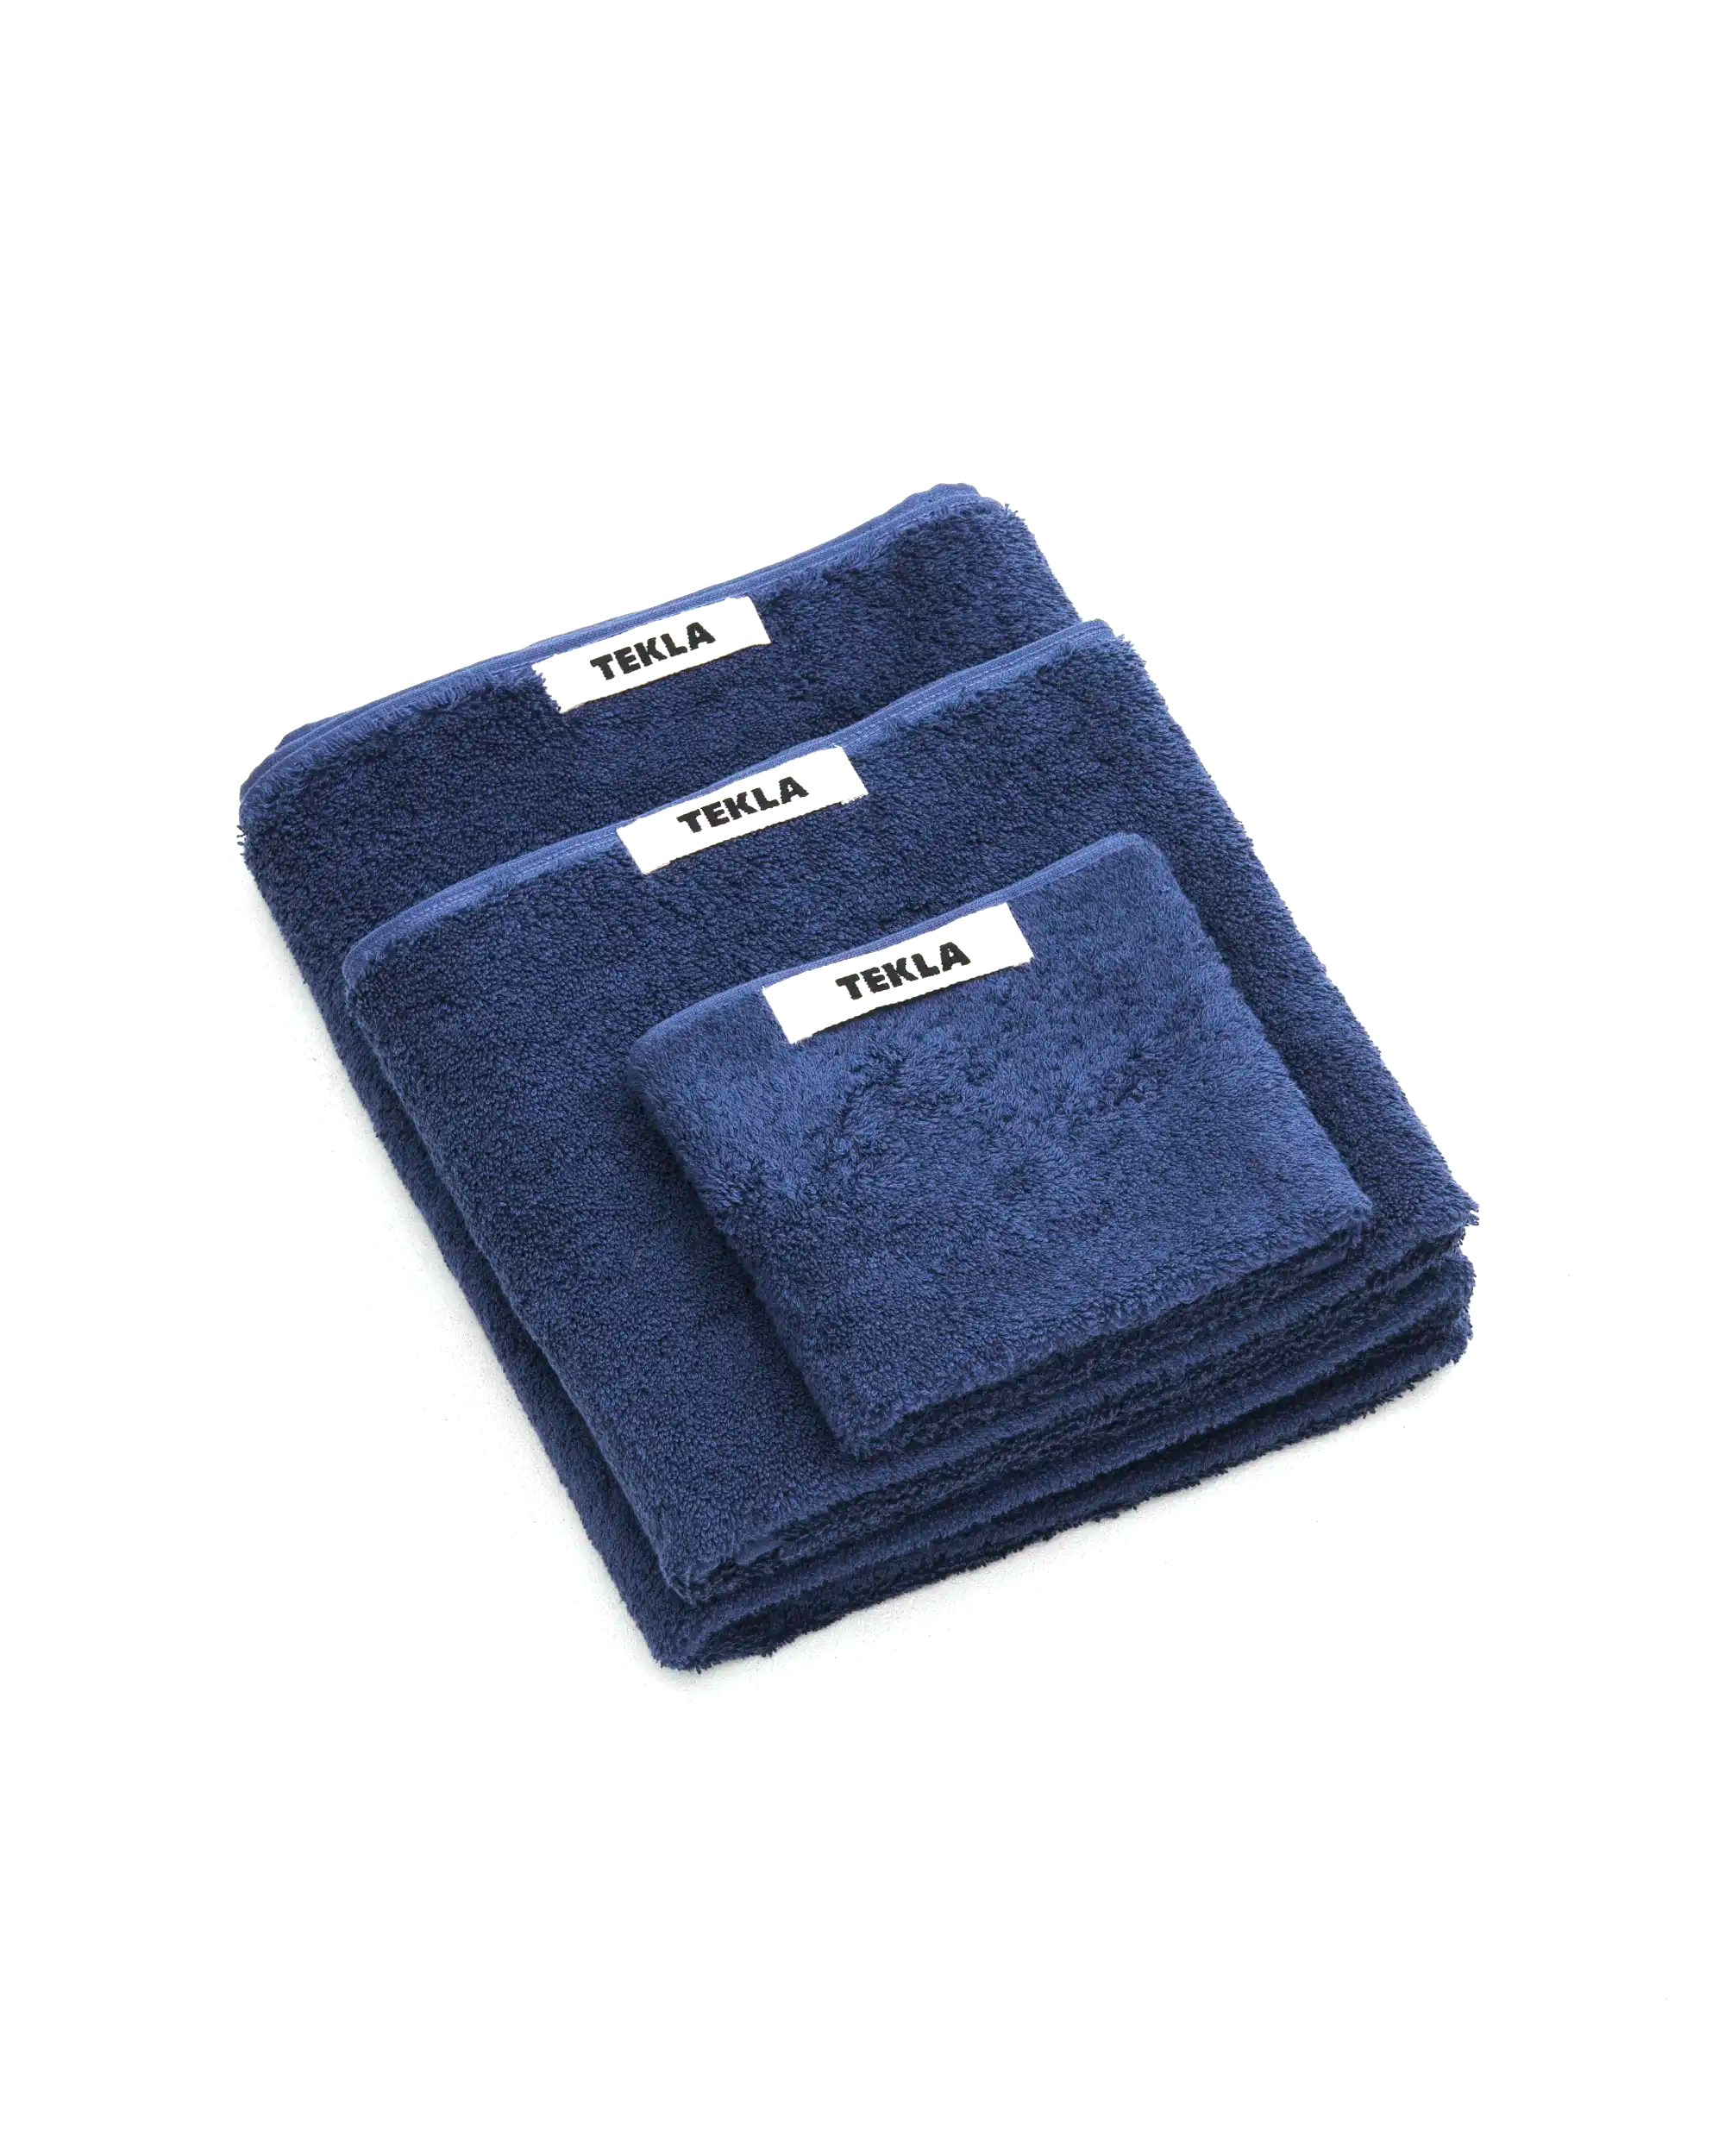 Bath Towel (Solid) - Navy